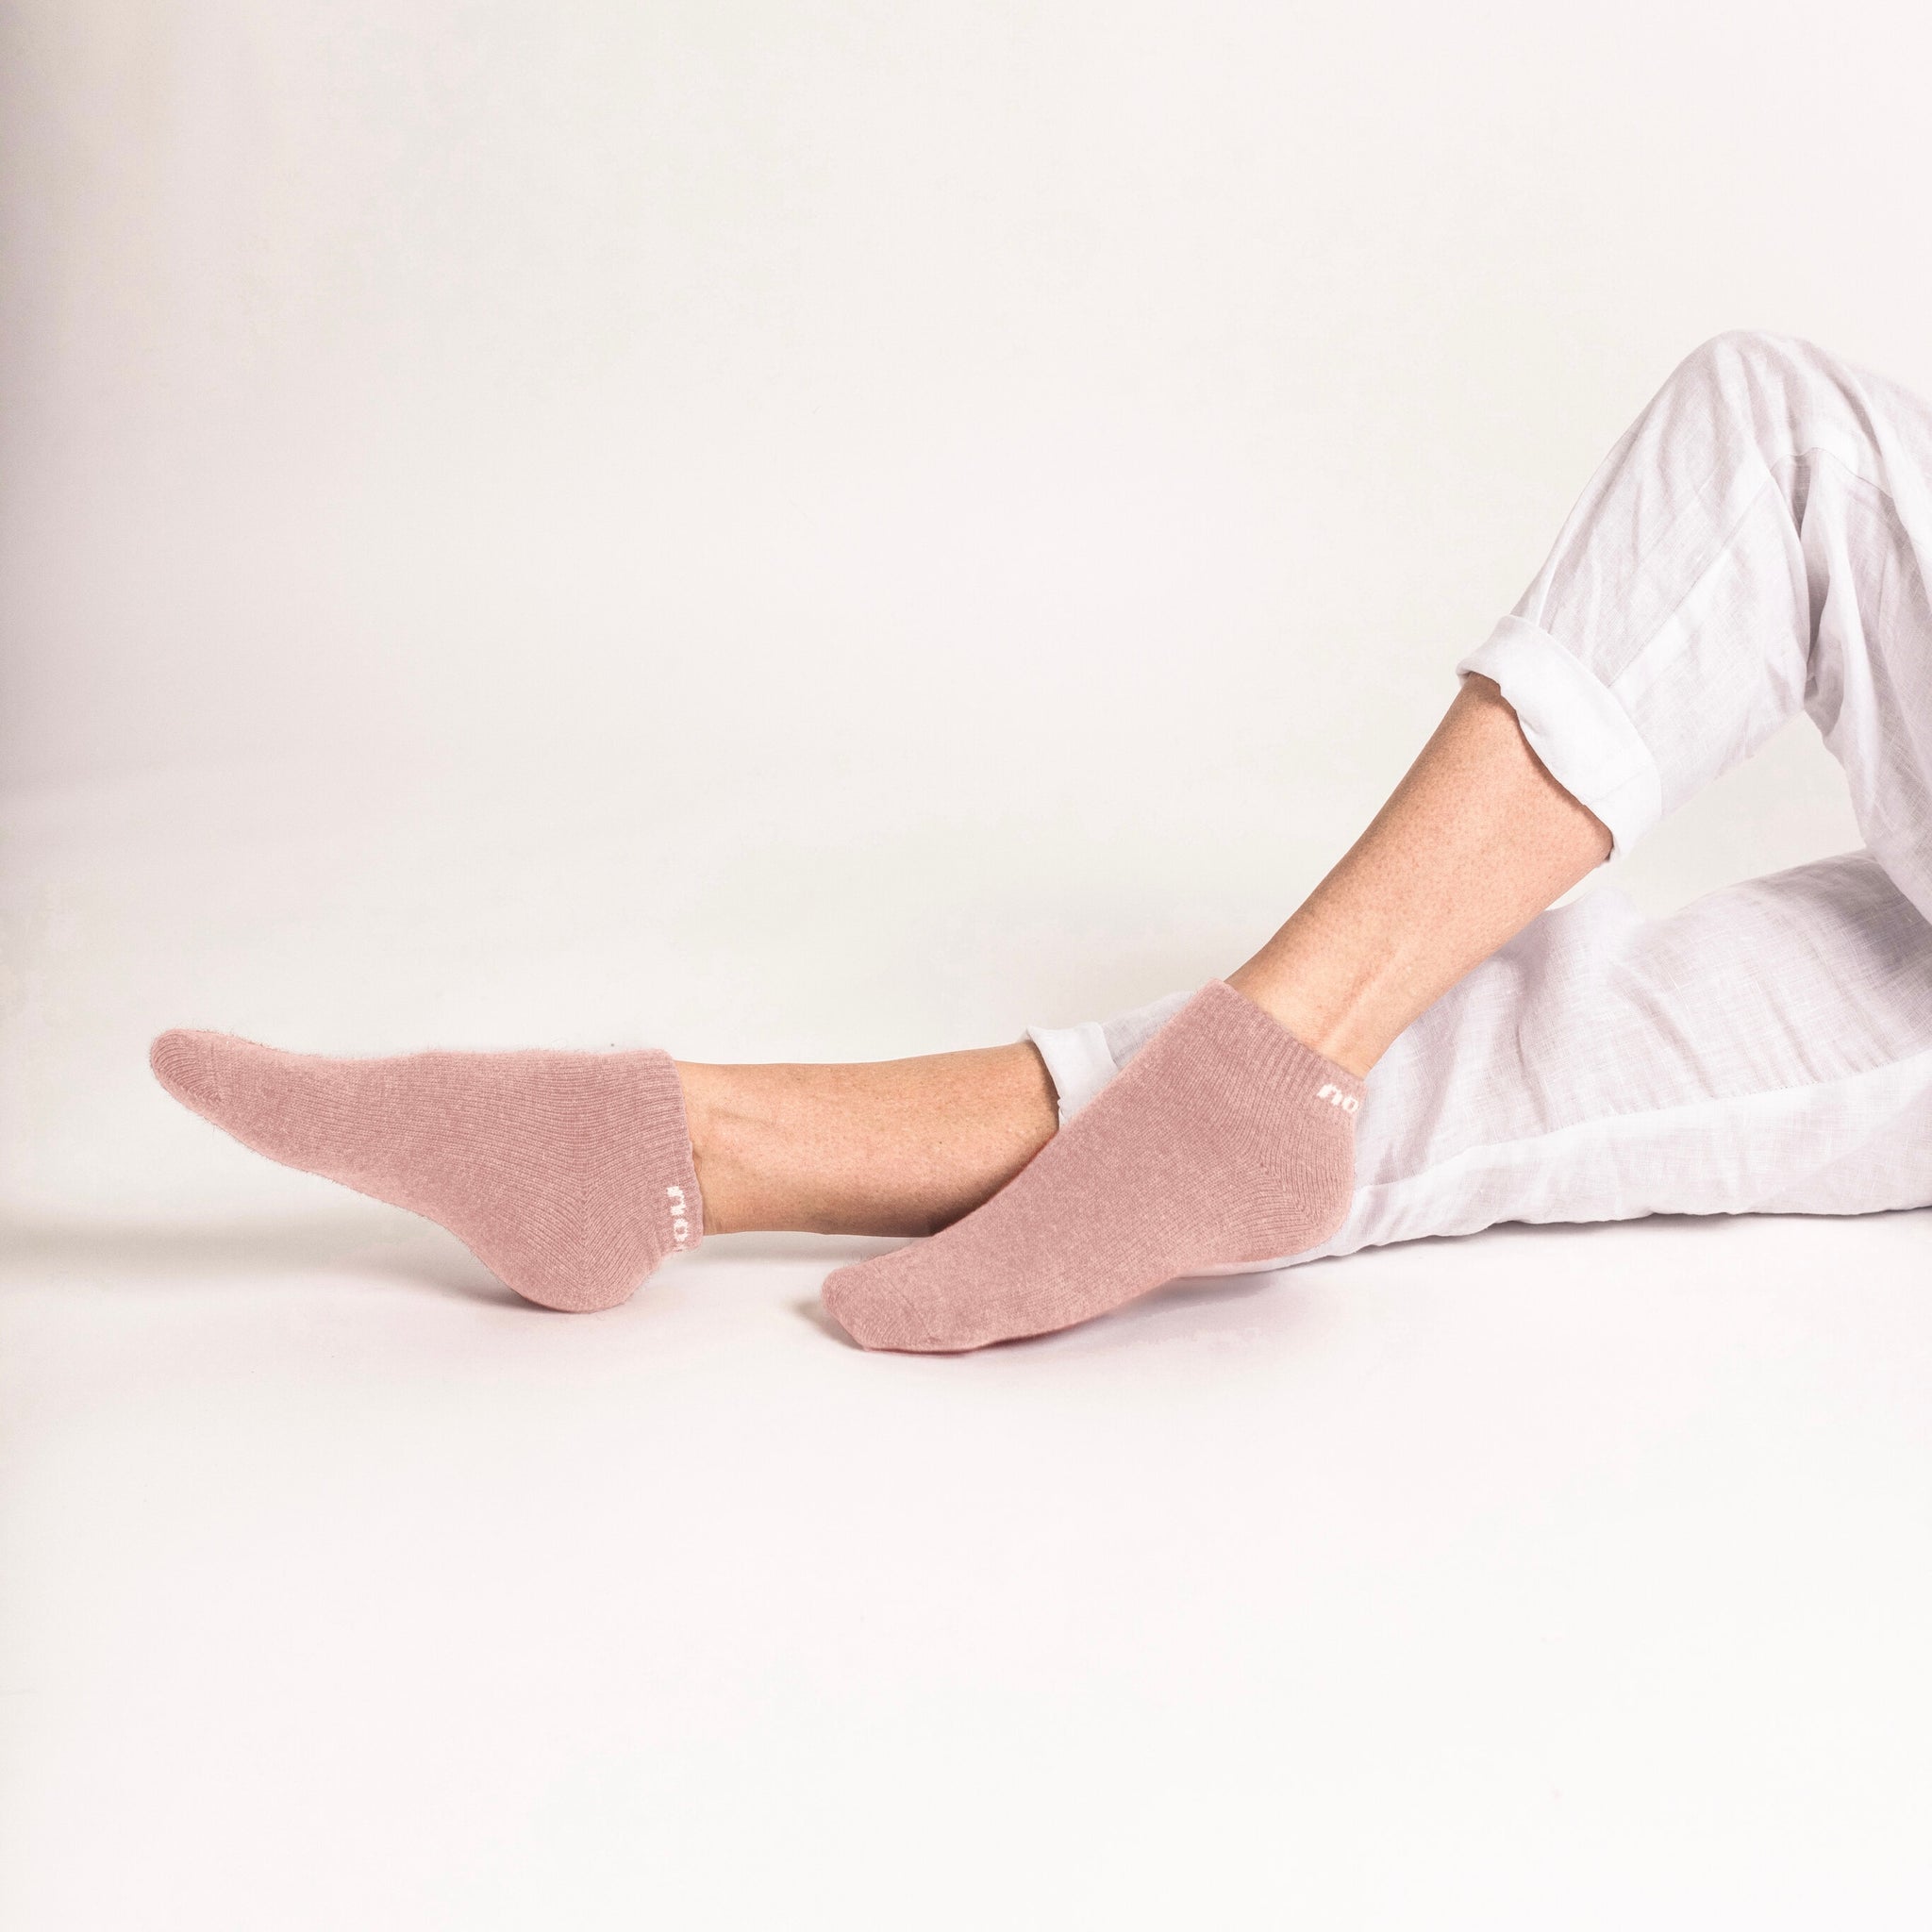 Possum Merino Wool NAPIER Socks, Pink Marshmallow